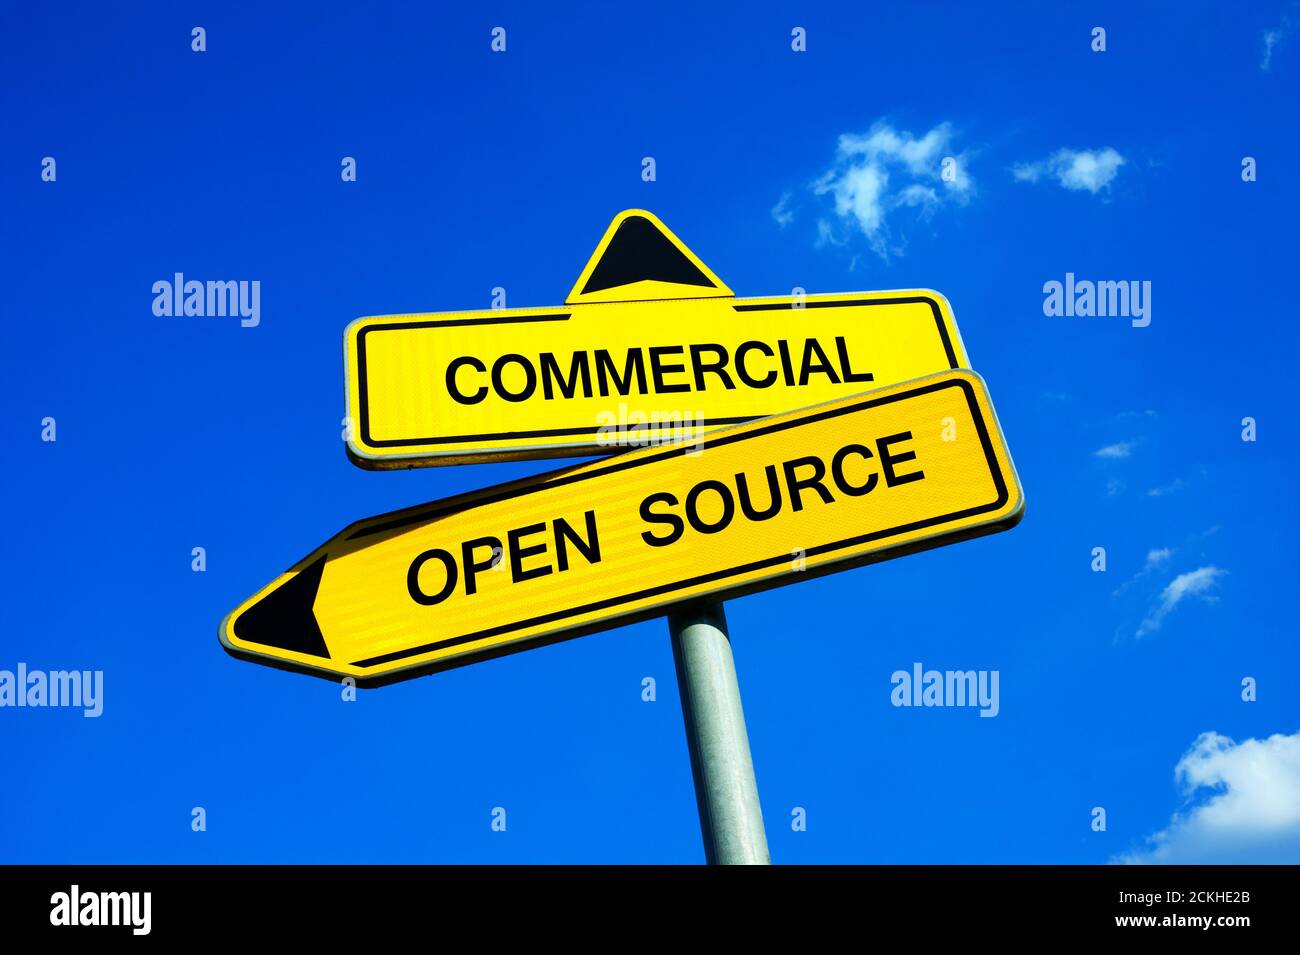 Commercial vs Open Source - Verkehrszeichen mit zwei Optionen - lizenzierte Software durch Copyright geschützt vs freie Programme entwickelt Und von prograa geteilt Stockfoto